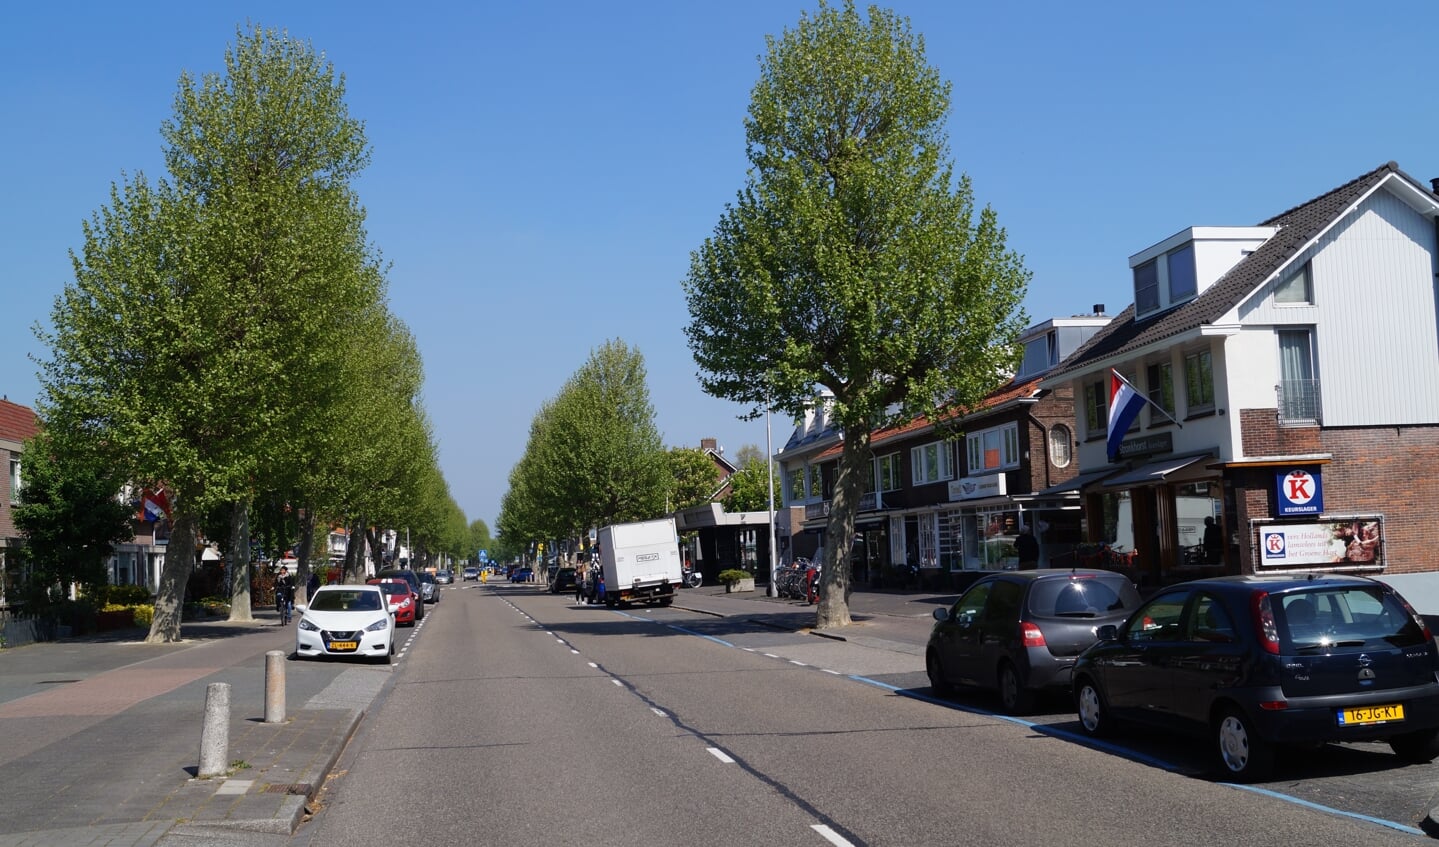 Stilte op de Amsterdamseweg. Normaal kun je hier over de hoofden lopen op Koningsdag.